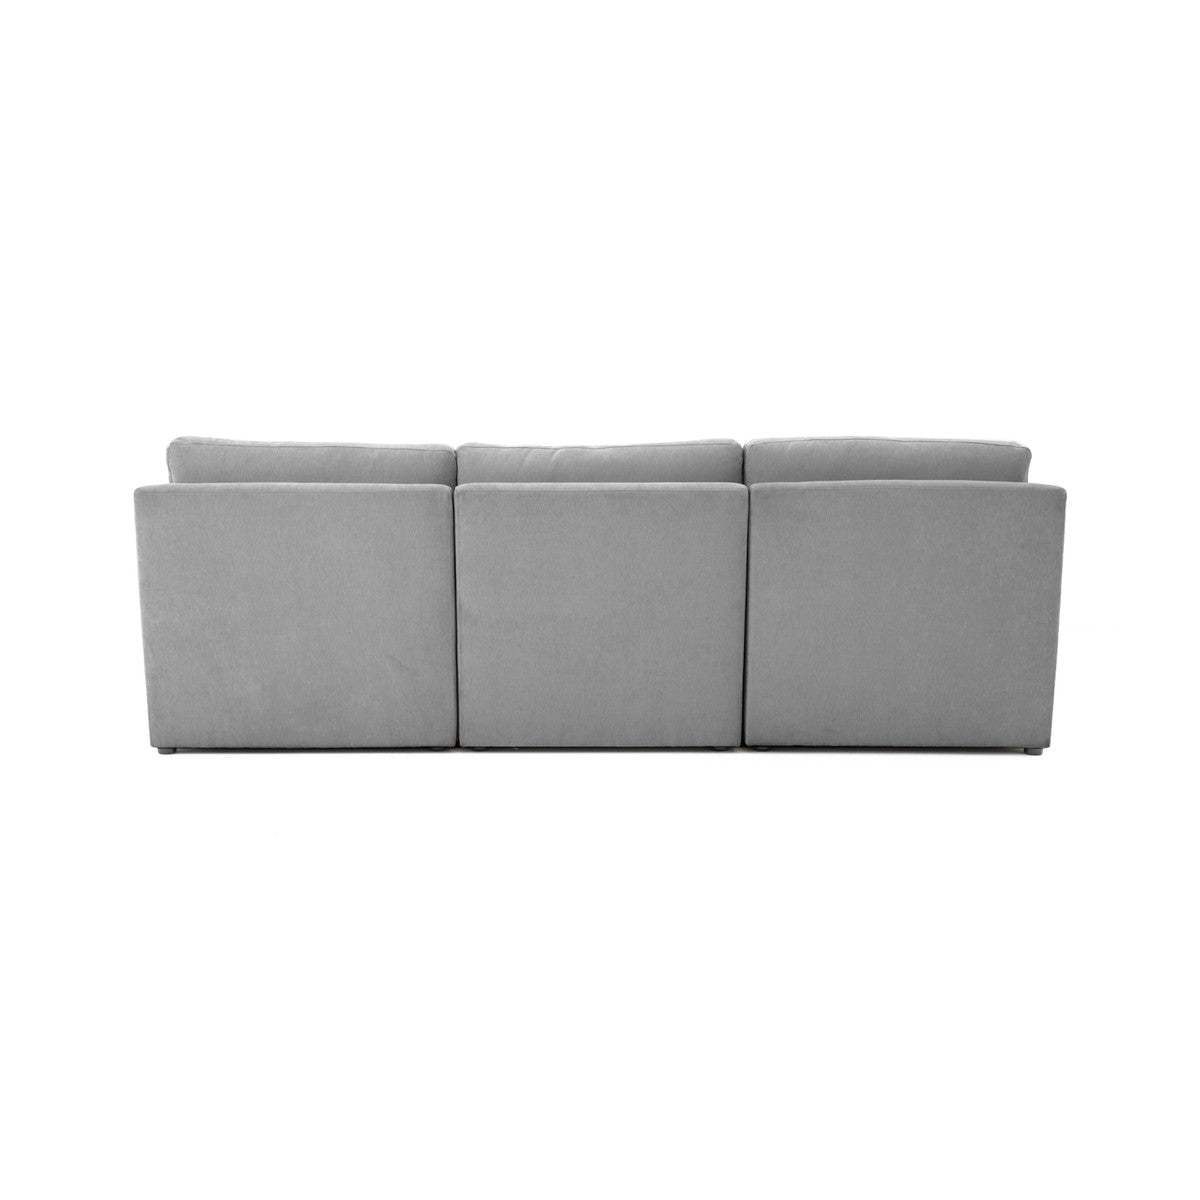 Aiden Modular Sofa